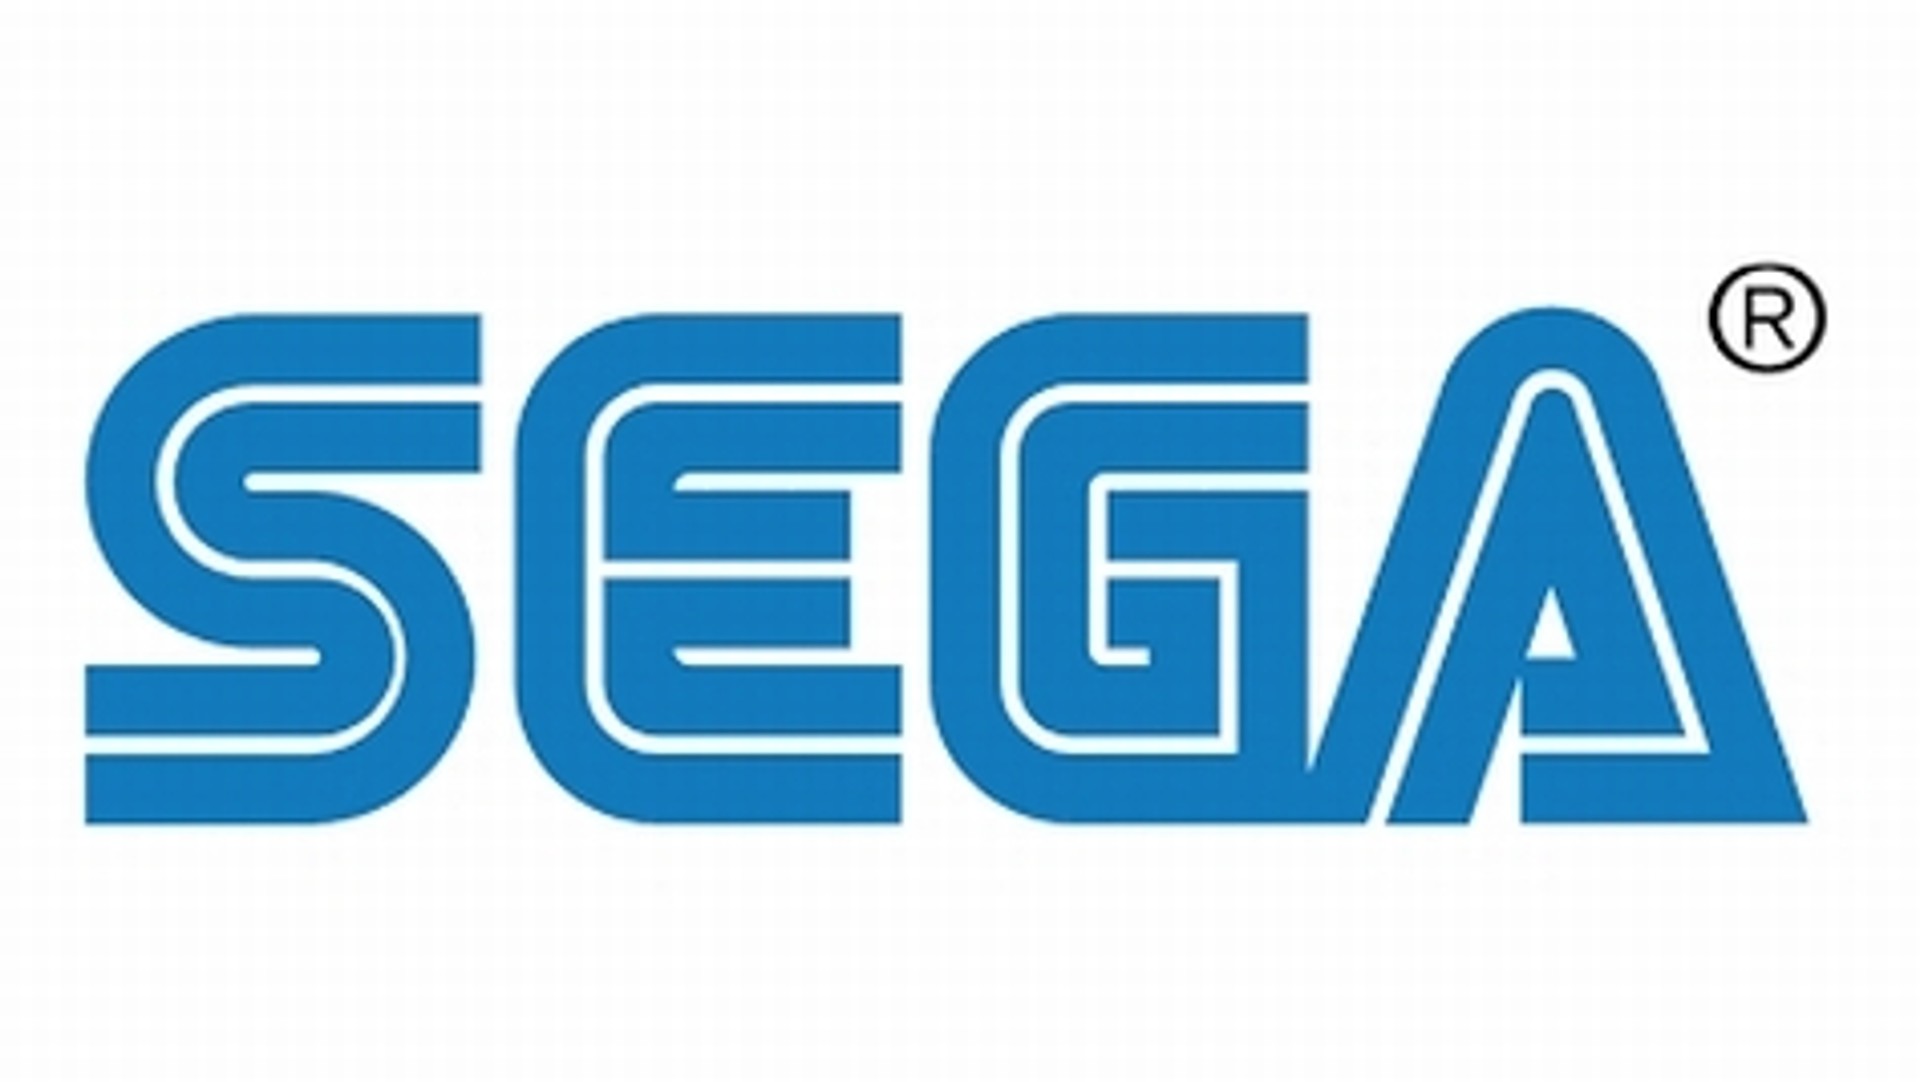 Sega จับมือกับ Microsoft เตรียมนำระบบคลาวด์มาใช้พัฒนาเกม